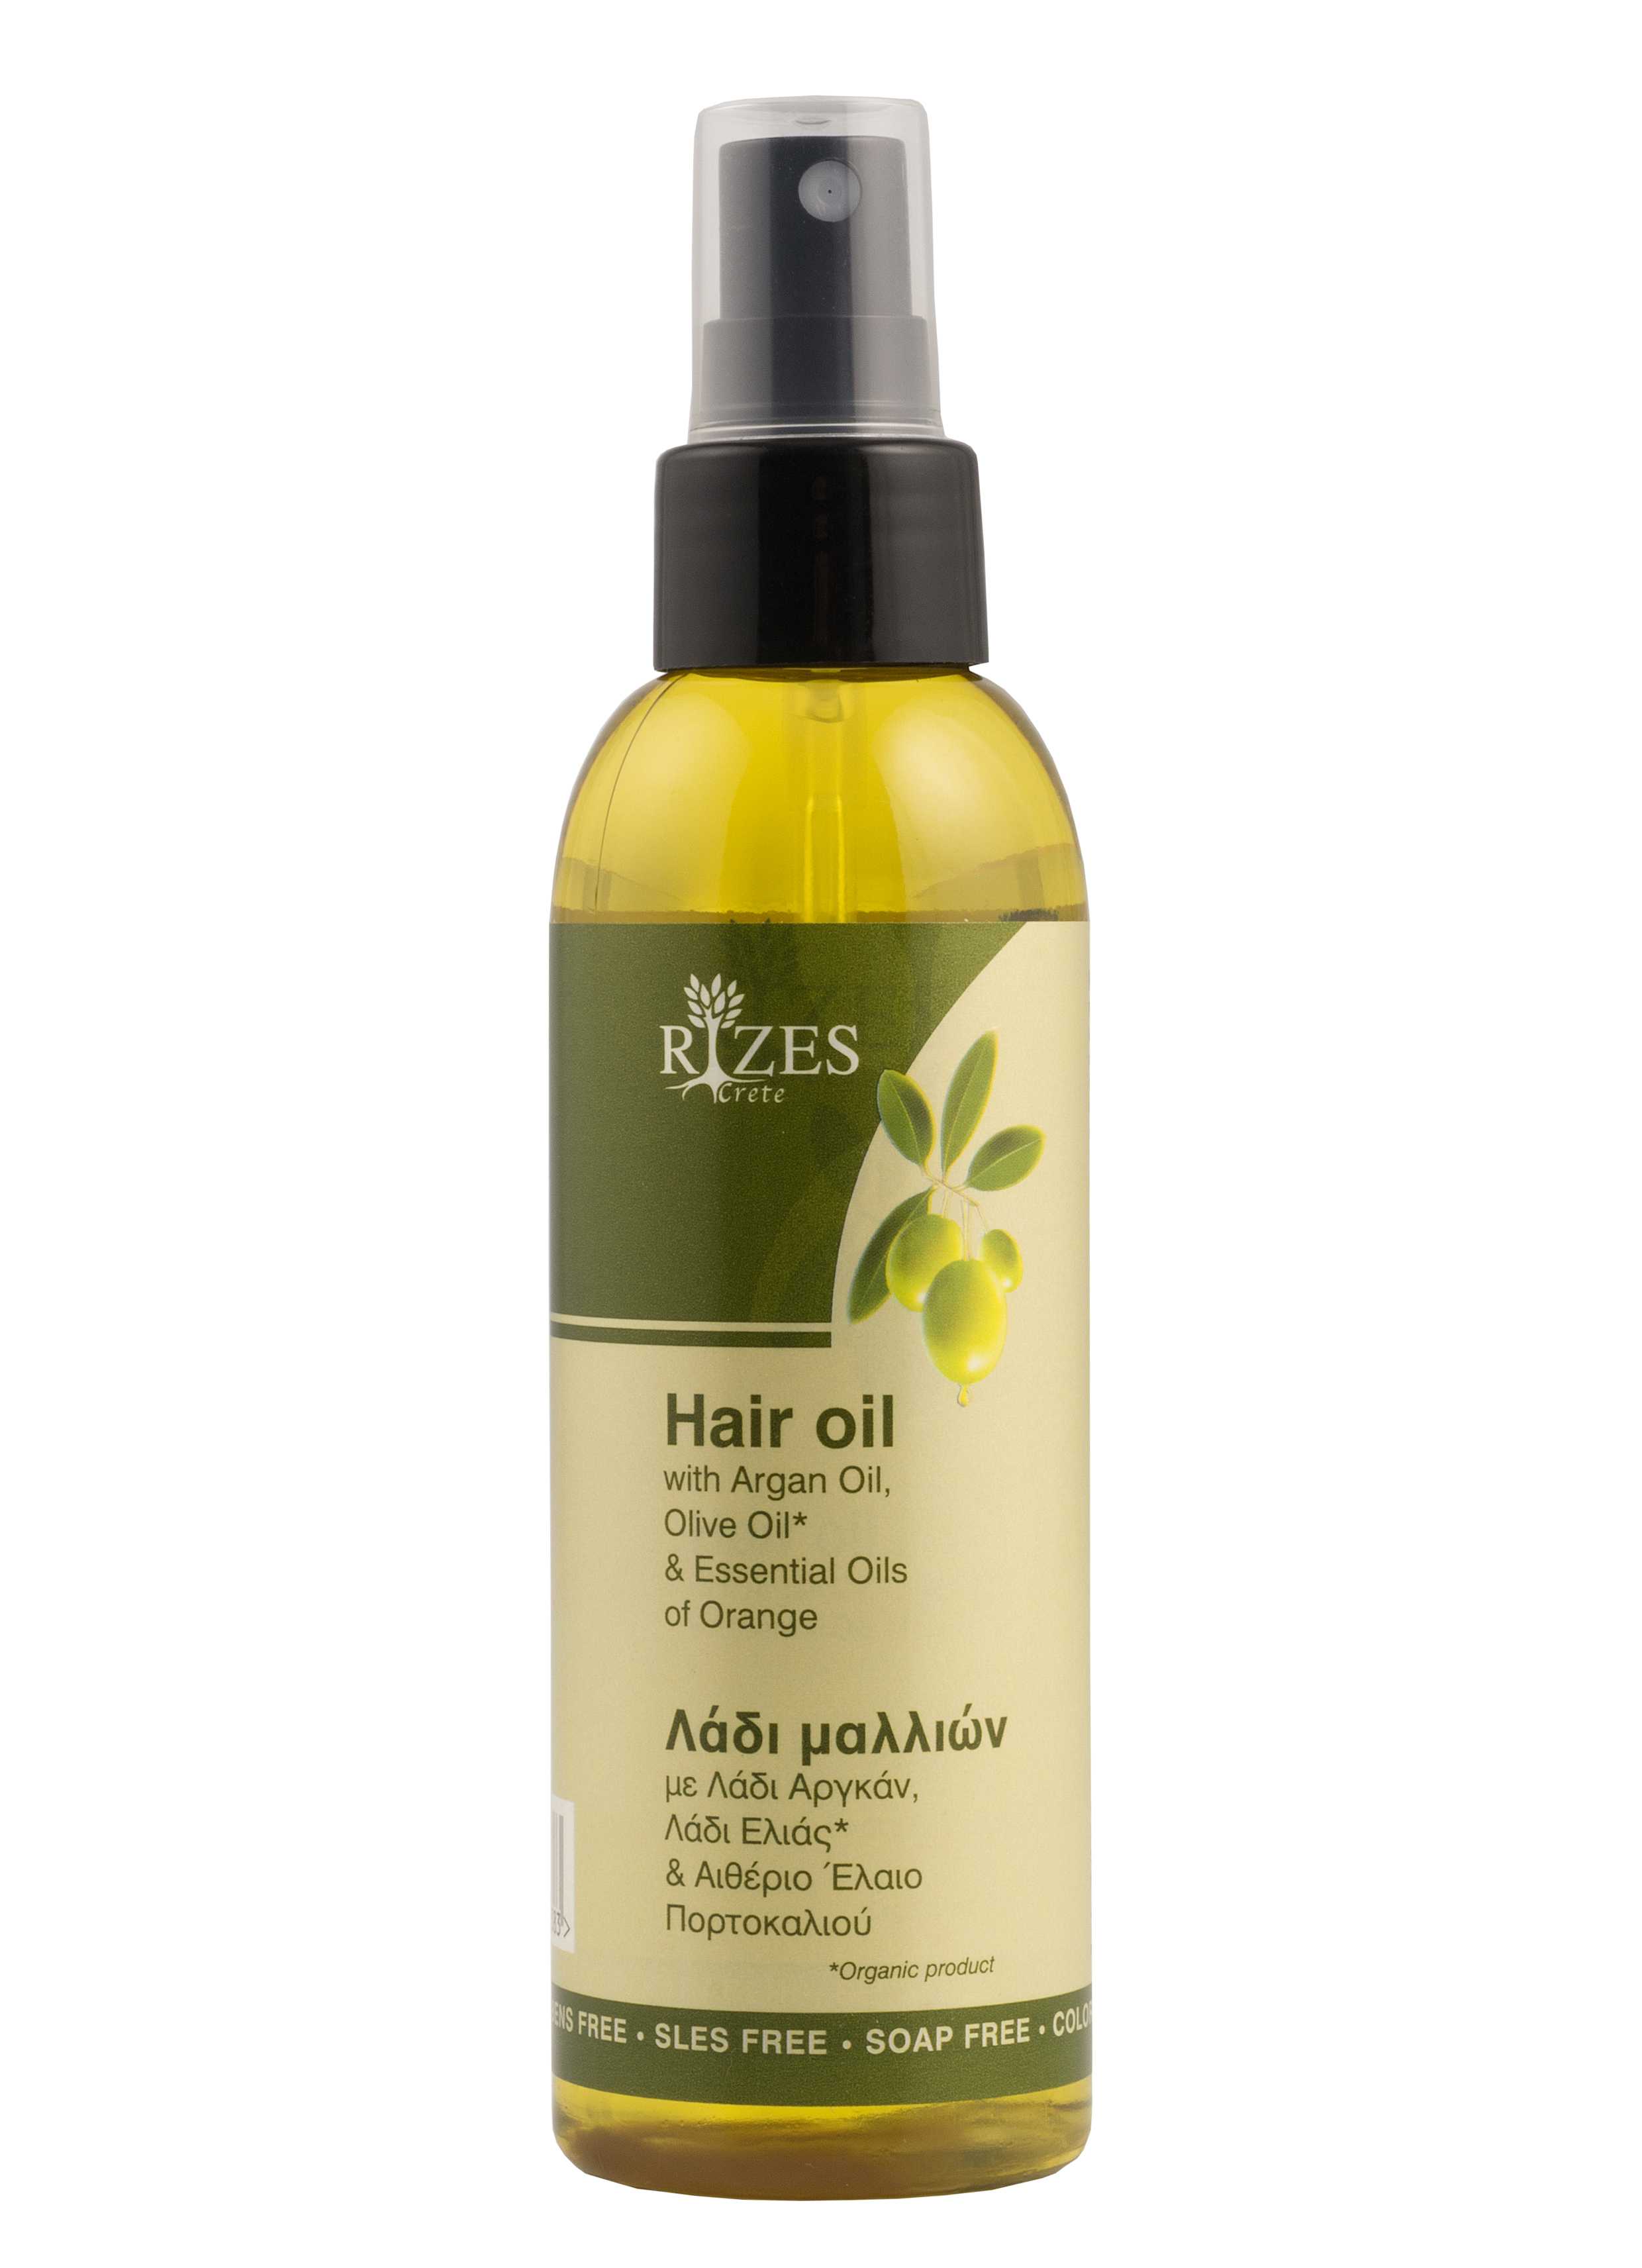 Легкие масла для волос. Olive Oil для волос. Масло для волос Oil. Масло для волос hair. Hair Oil масло для волос.